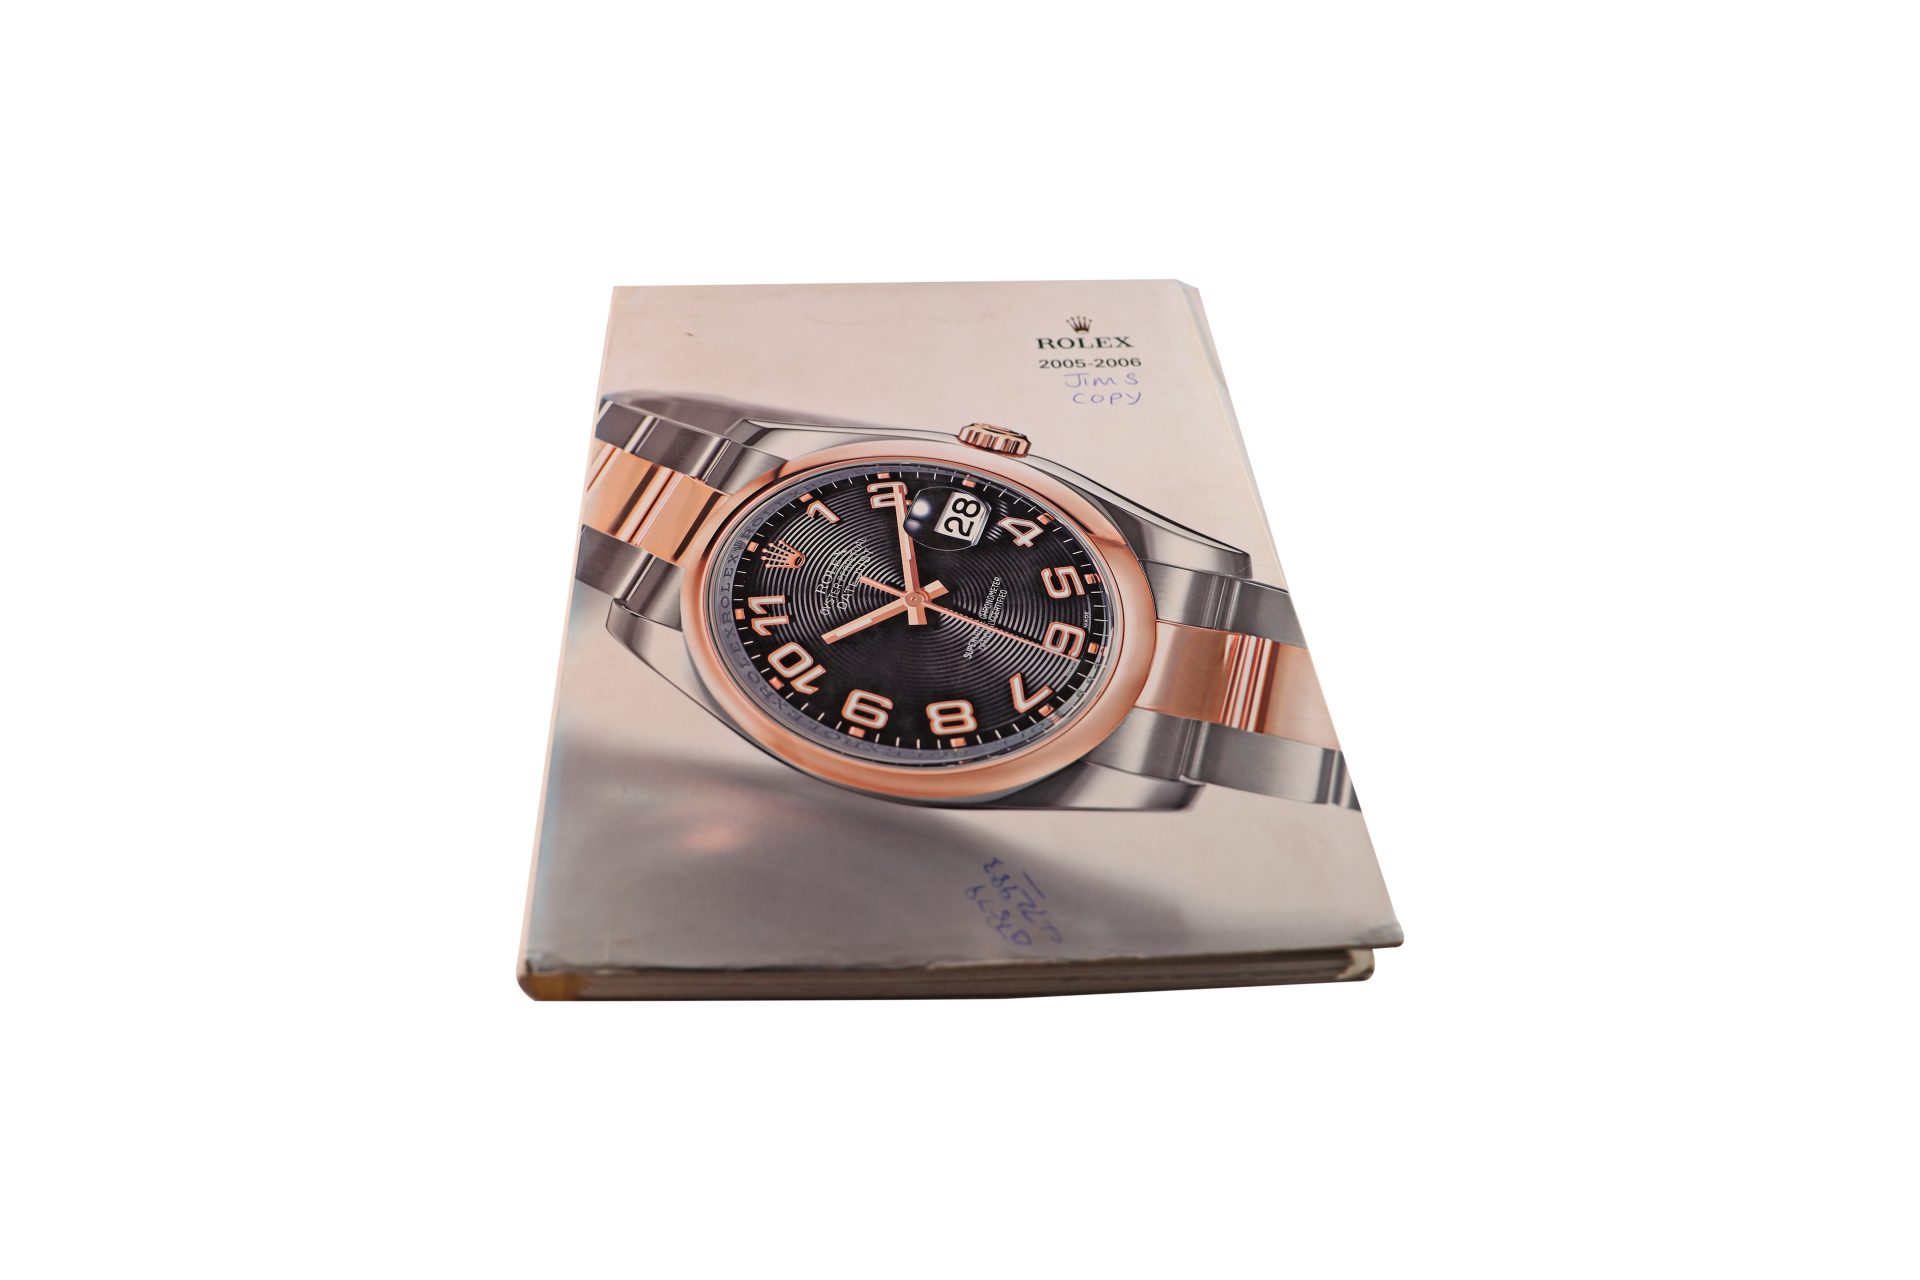 Rolex-2005-–-2006-Master-Dealer-Watch-Catalog - Rare Watch Parts